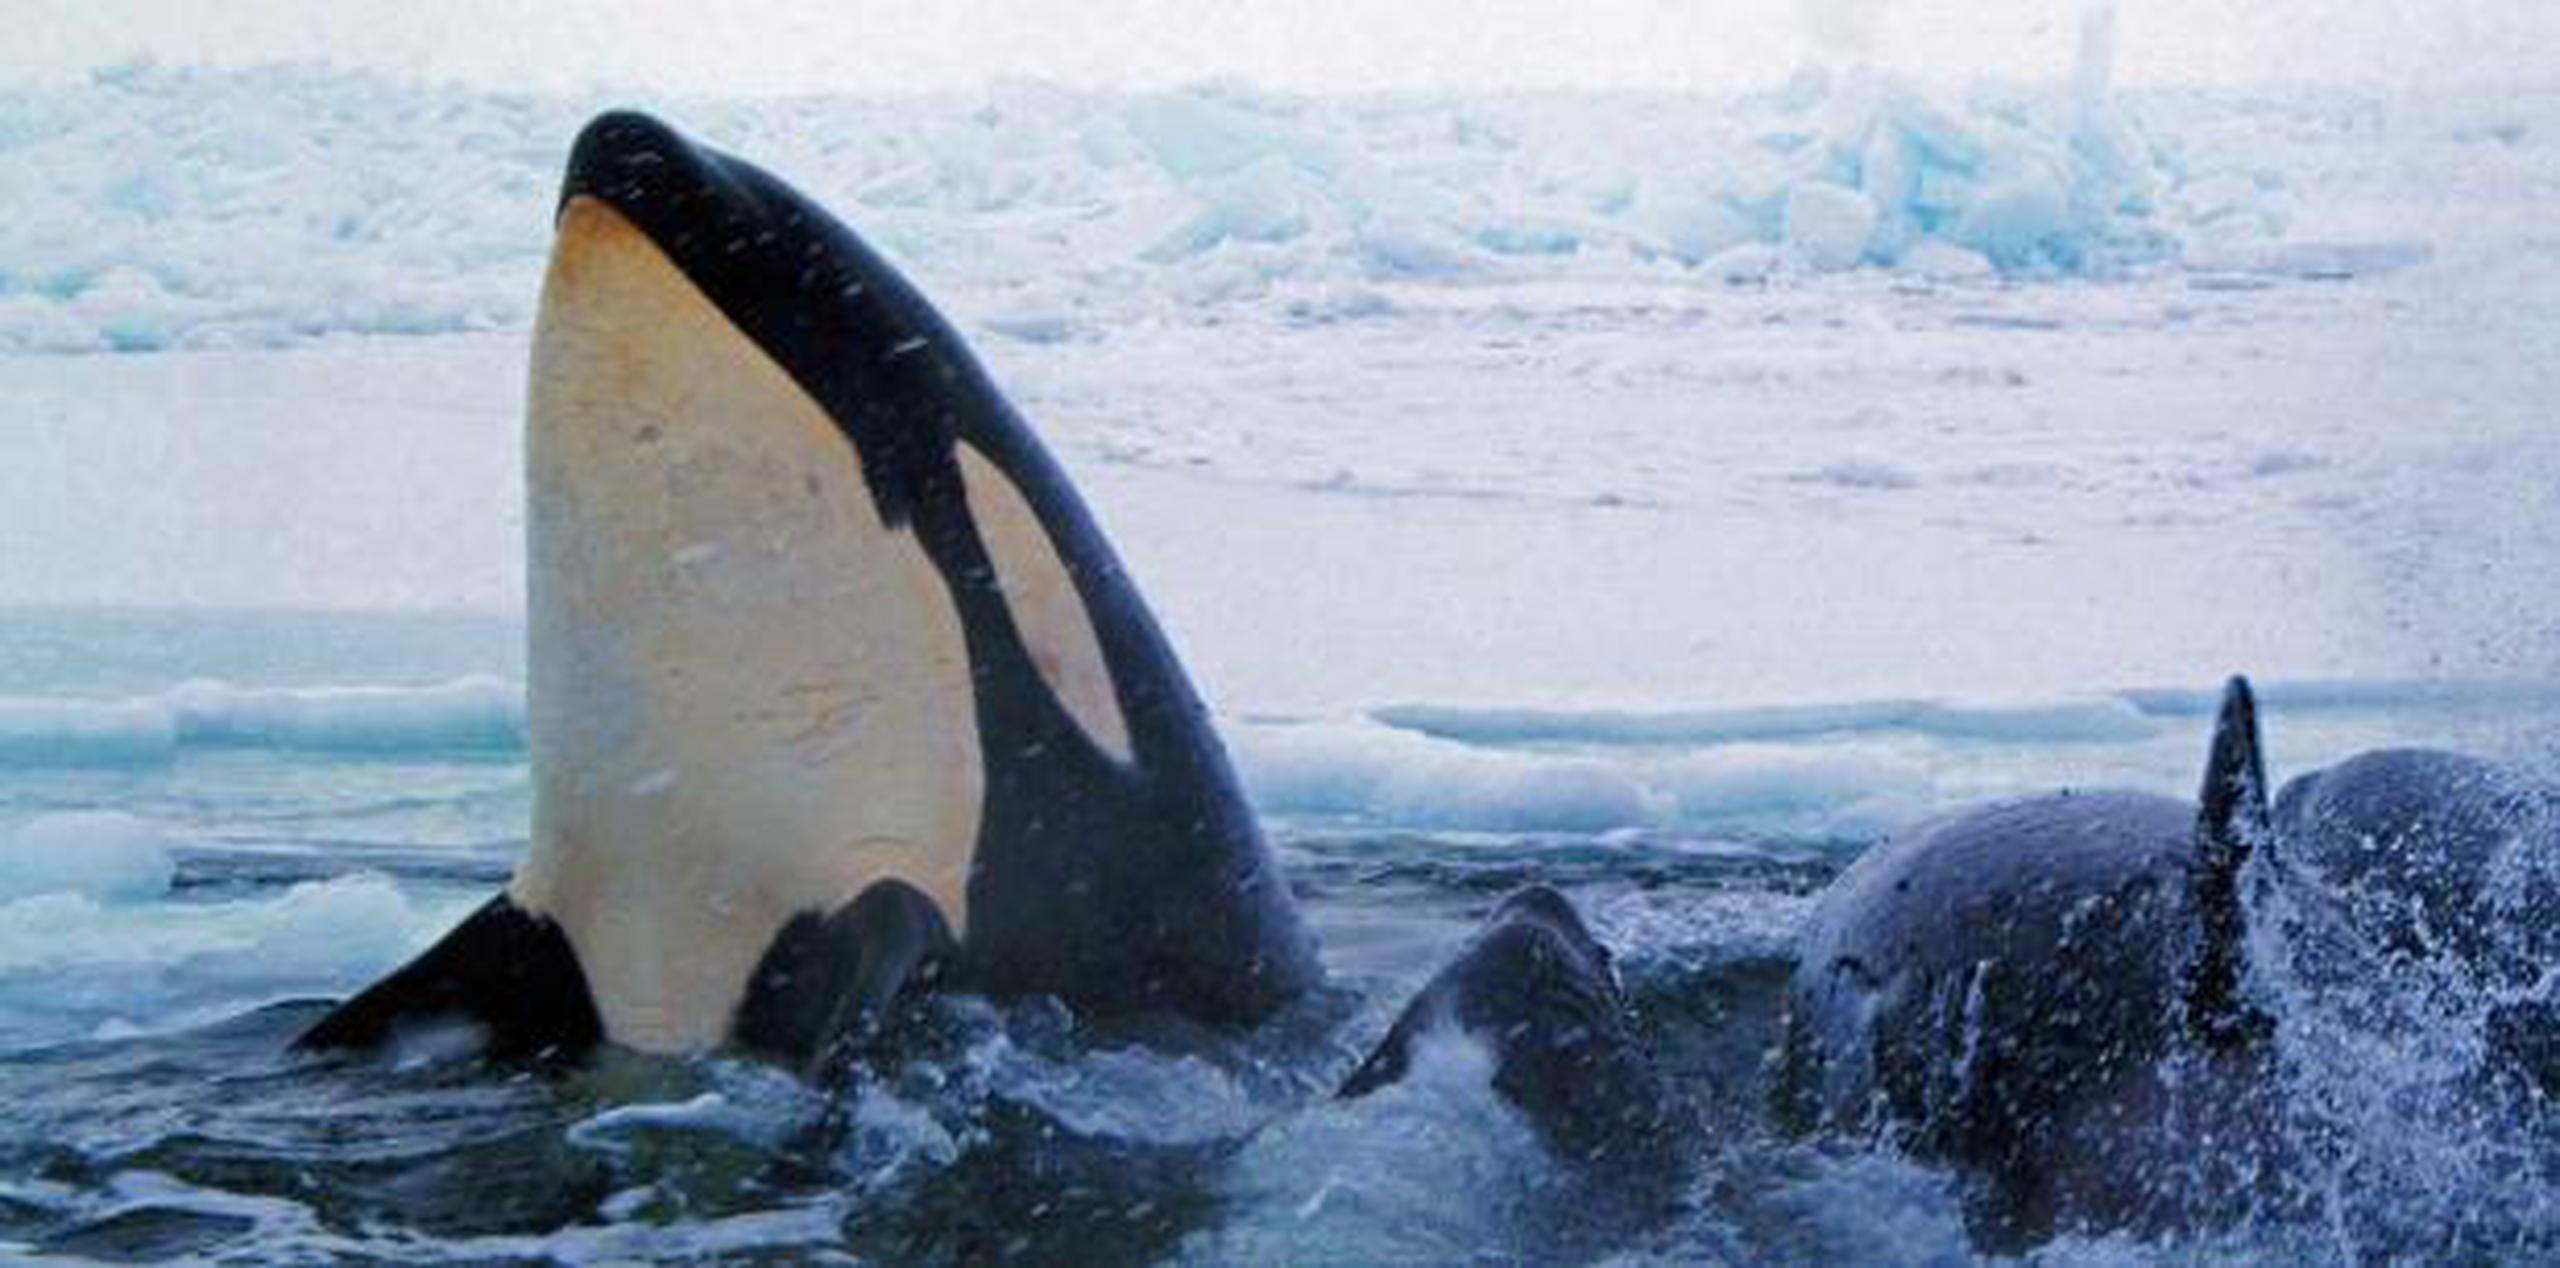 Ken Balcomb, fundador del centro, dijo que se siente aliviado de que la orca haya regresado a su comportamiento habitual. (Archivo)